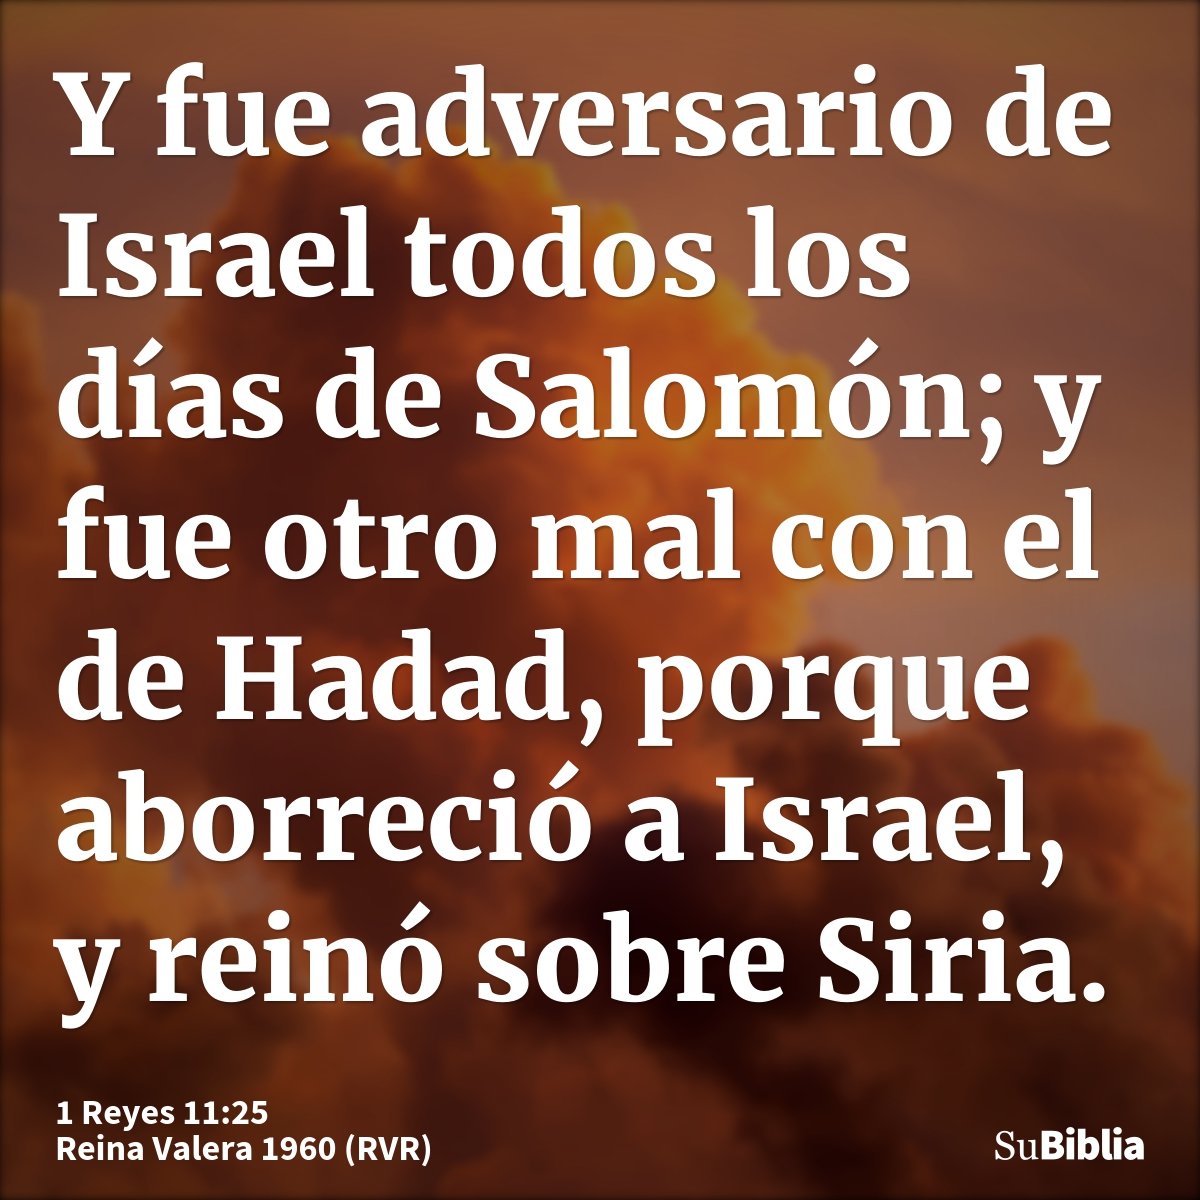 Y fue adversario de Israel todos los días de Salomón; y fue otro mal con el de Hadad, porque aborreció a Israel, y reinó sobre Siria.